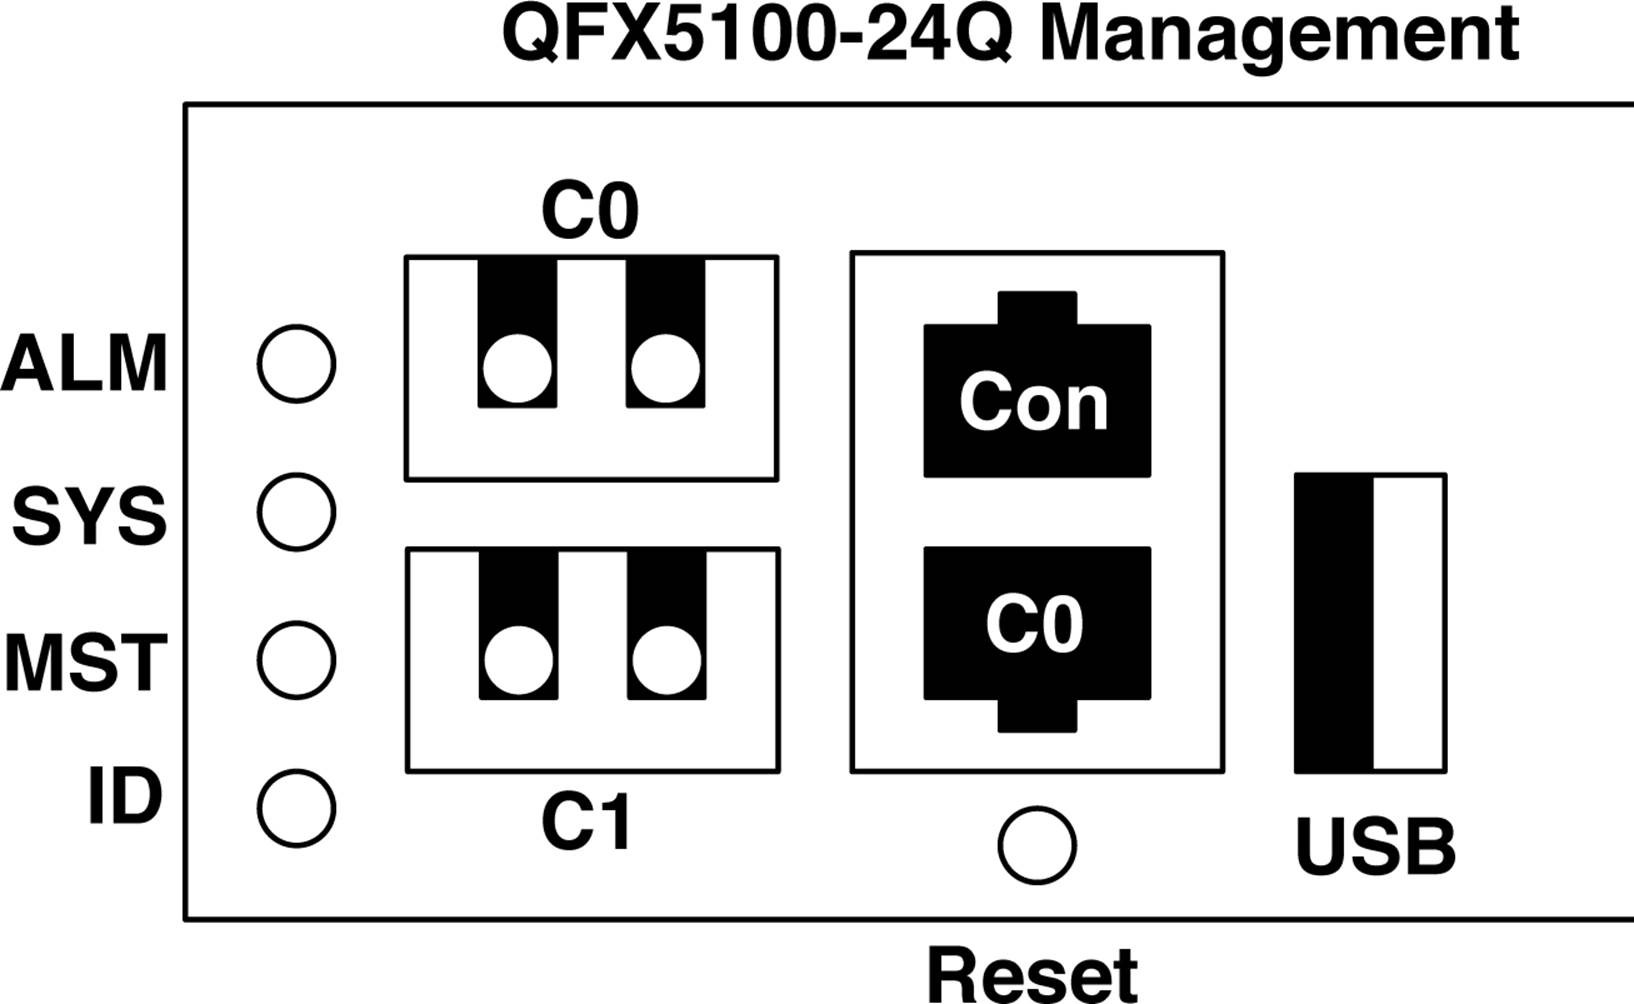 The QFX5100-24Q management console